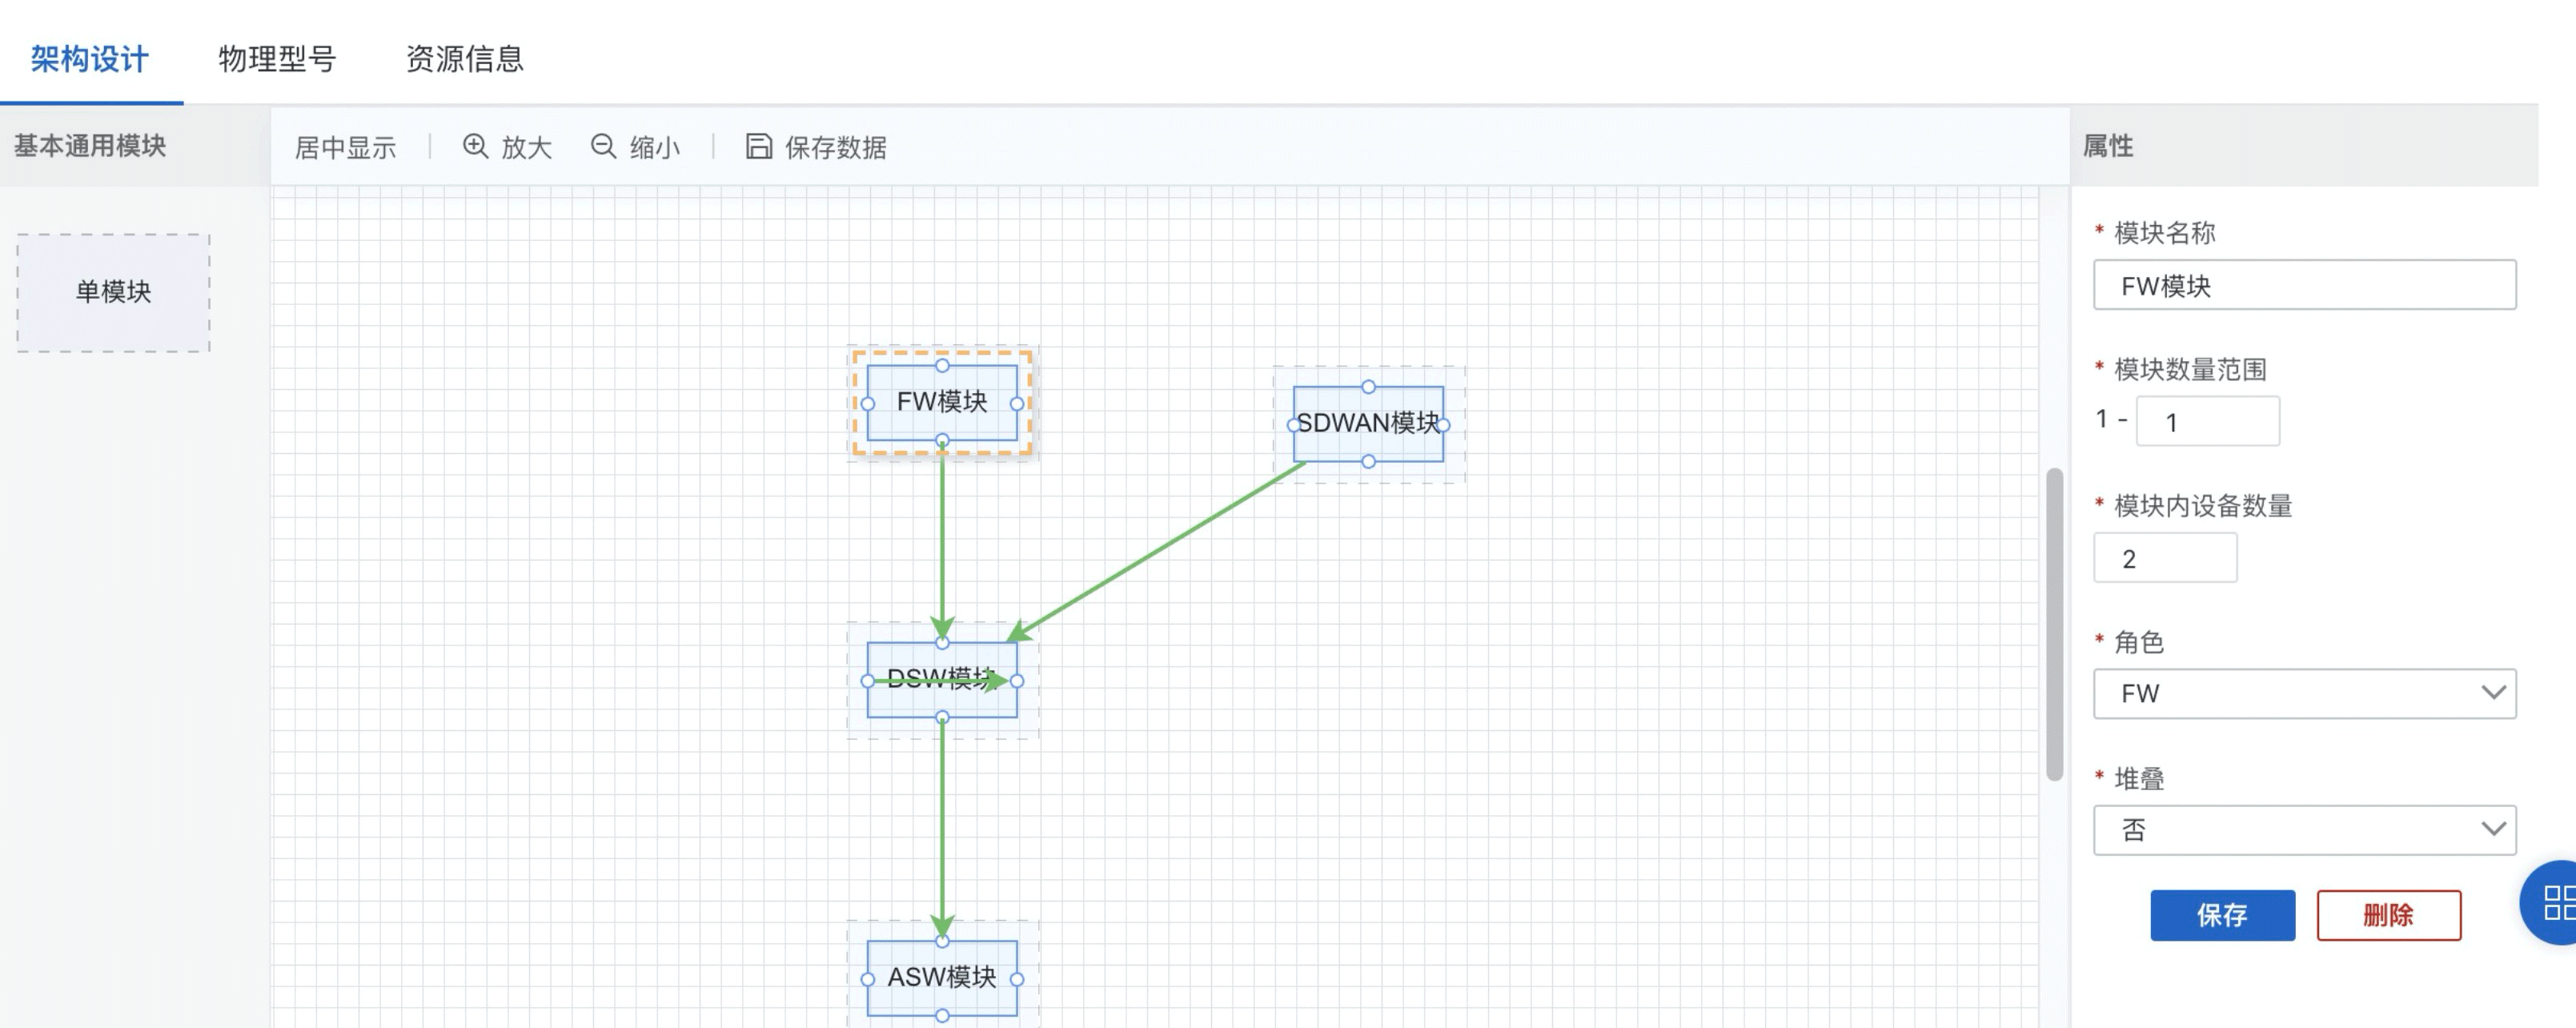 图2-网络架构设计.png